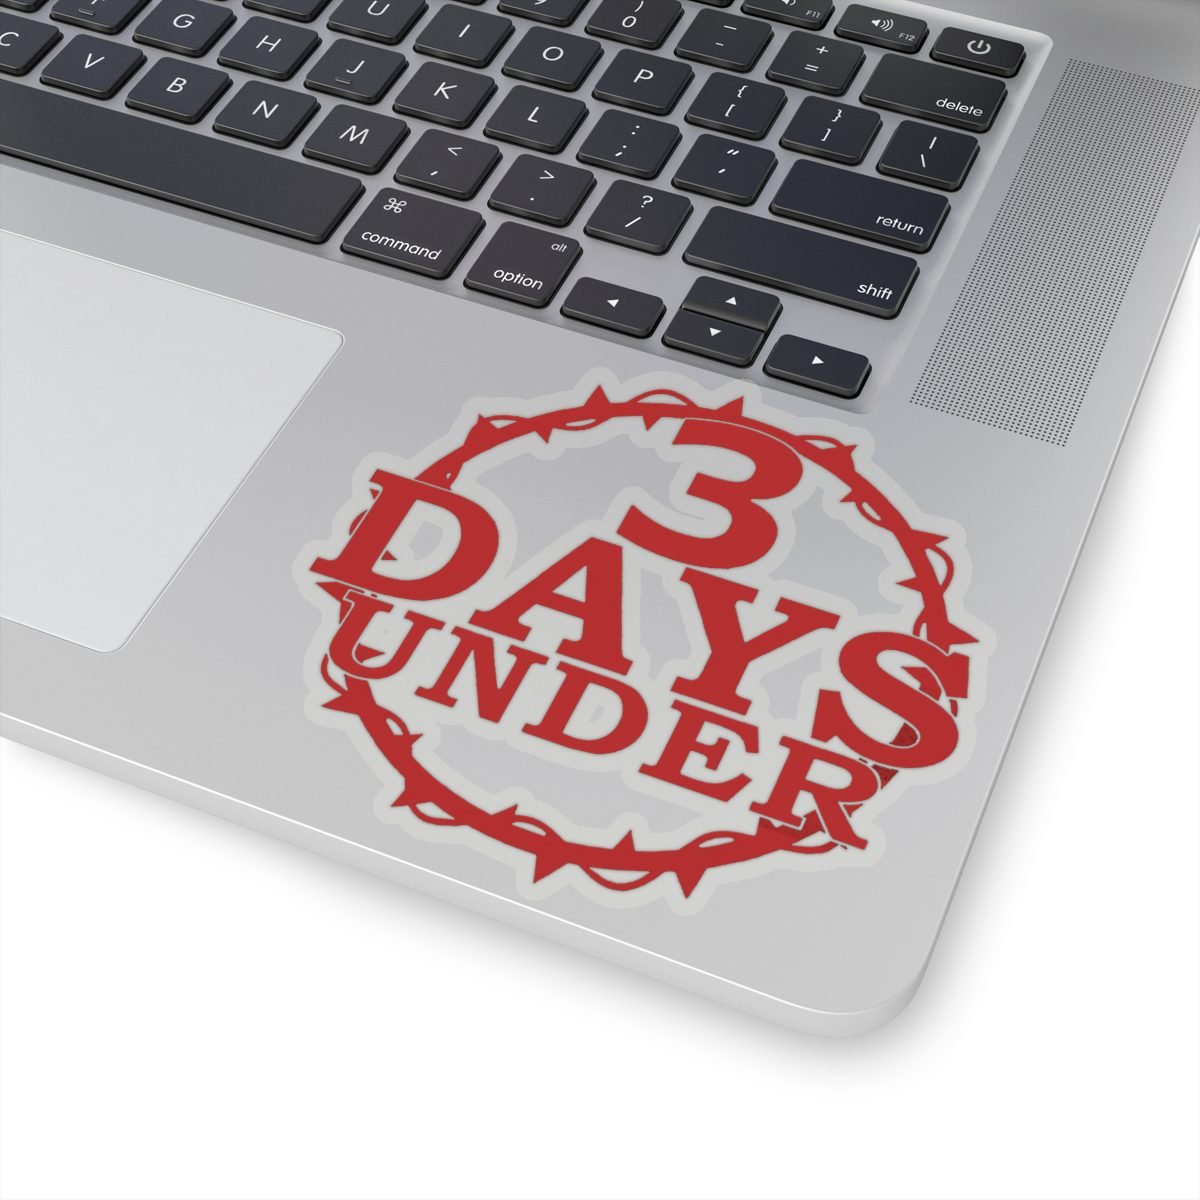 3 Days Under Logo Die Cut Stickers